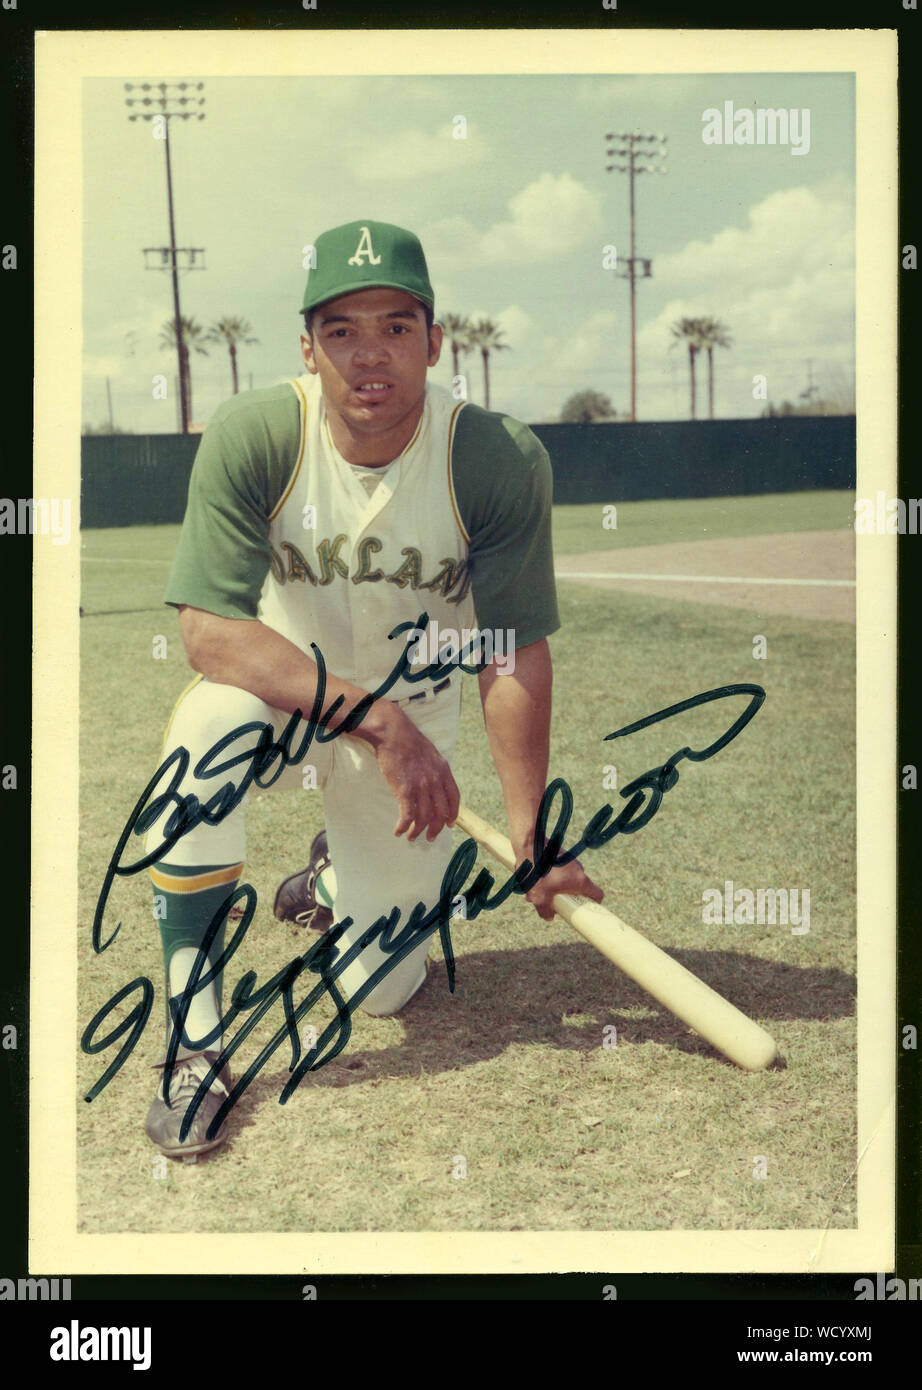 Colore autografo istantanea di Reggie Jackson che era una Hall of Fame giocatore di baseball con Oakland, New York Yankees e altri team a partire dagli anni sessanta agli anni ottanta. Foto Stock